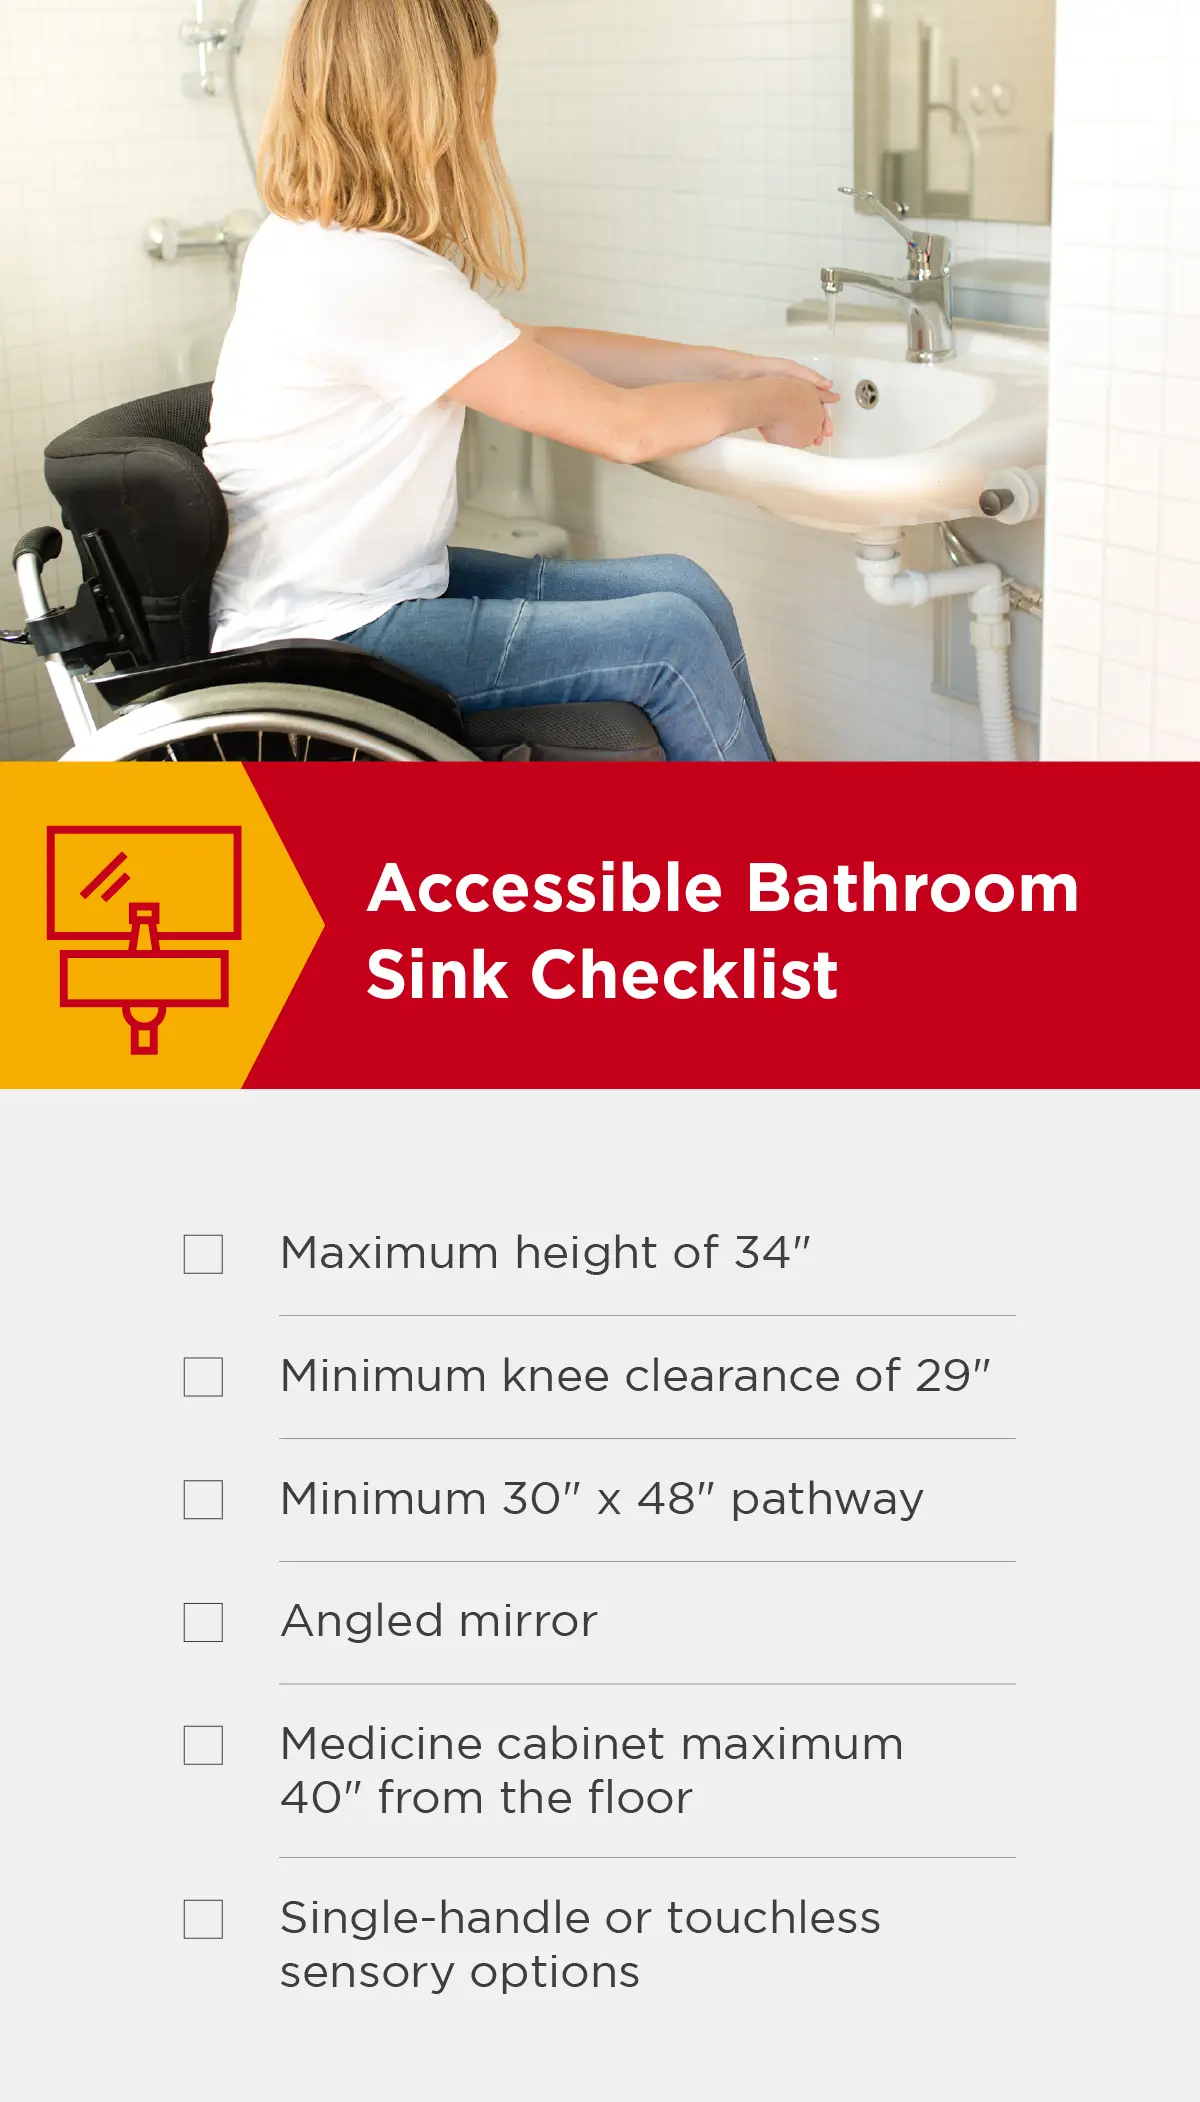 Accessible bathroom sink checklist.